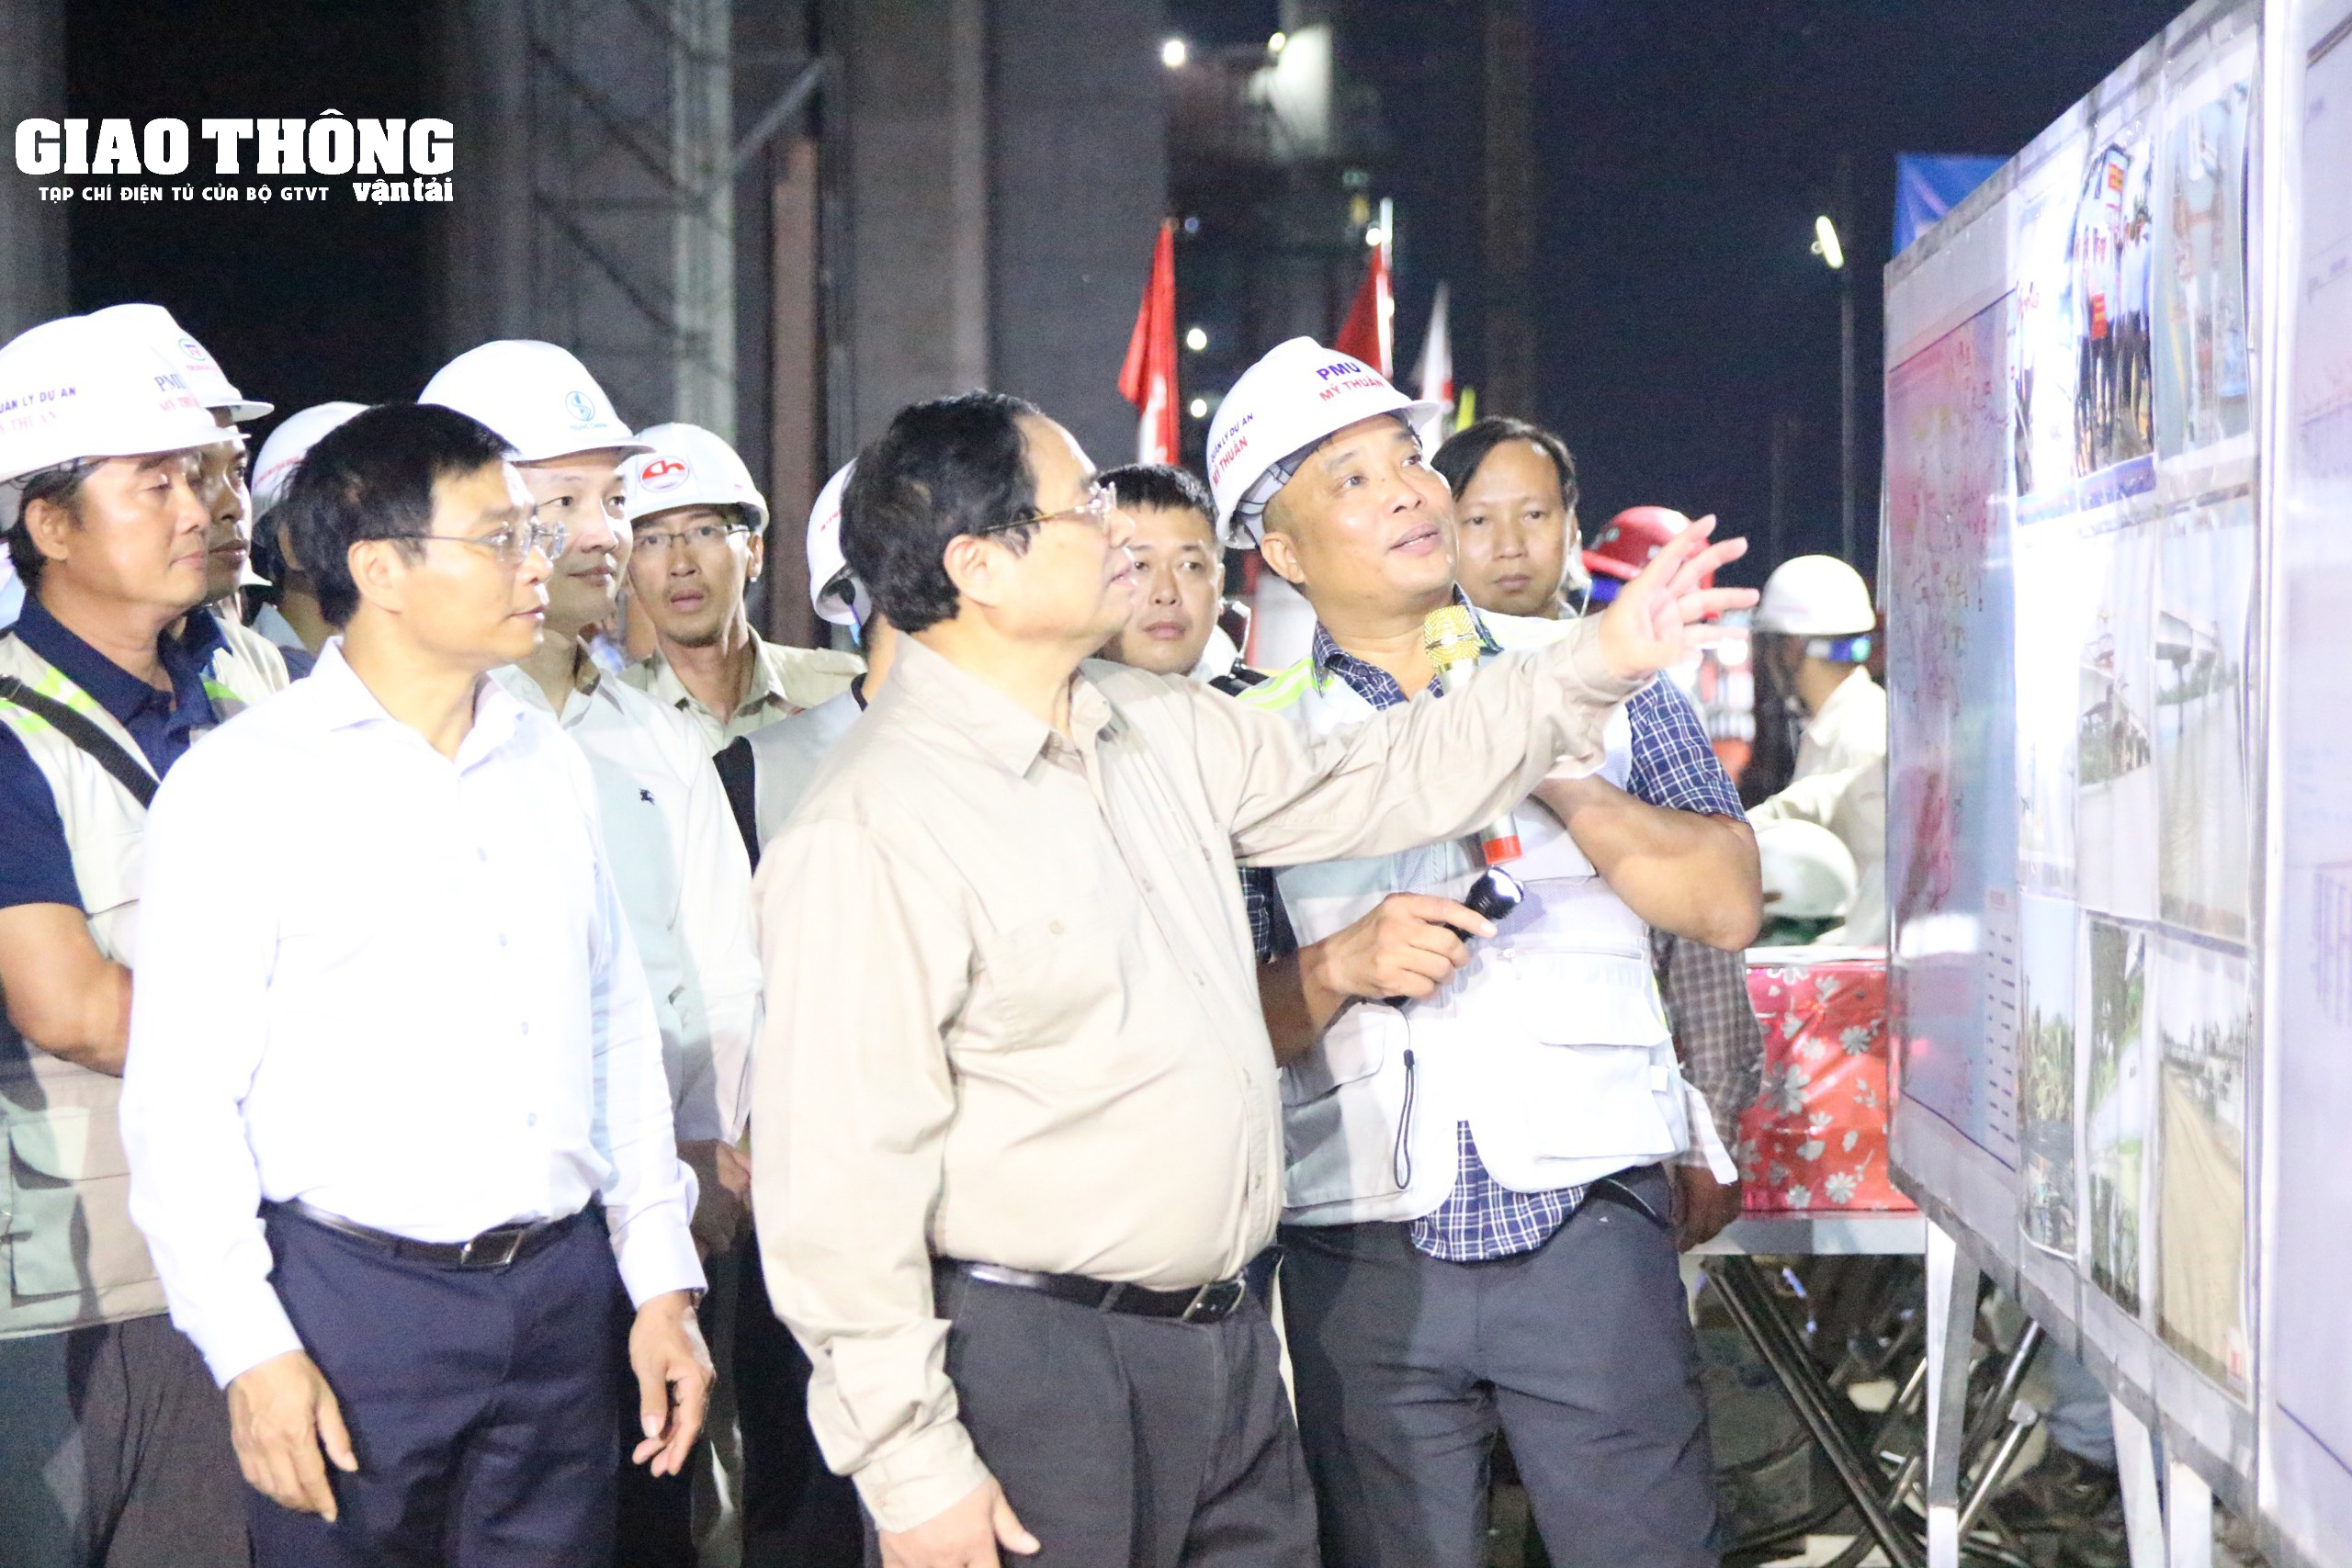 Thủ tướng Chính phủ kiểm tra dự án cầu Rạch Miễu 2 trong đêm- Ảnh 1.